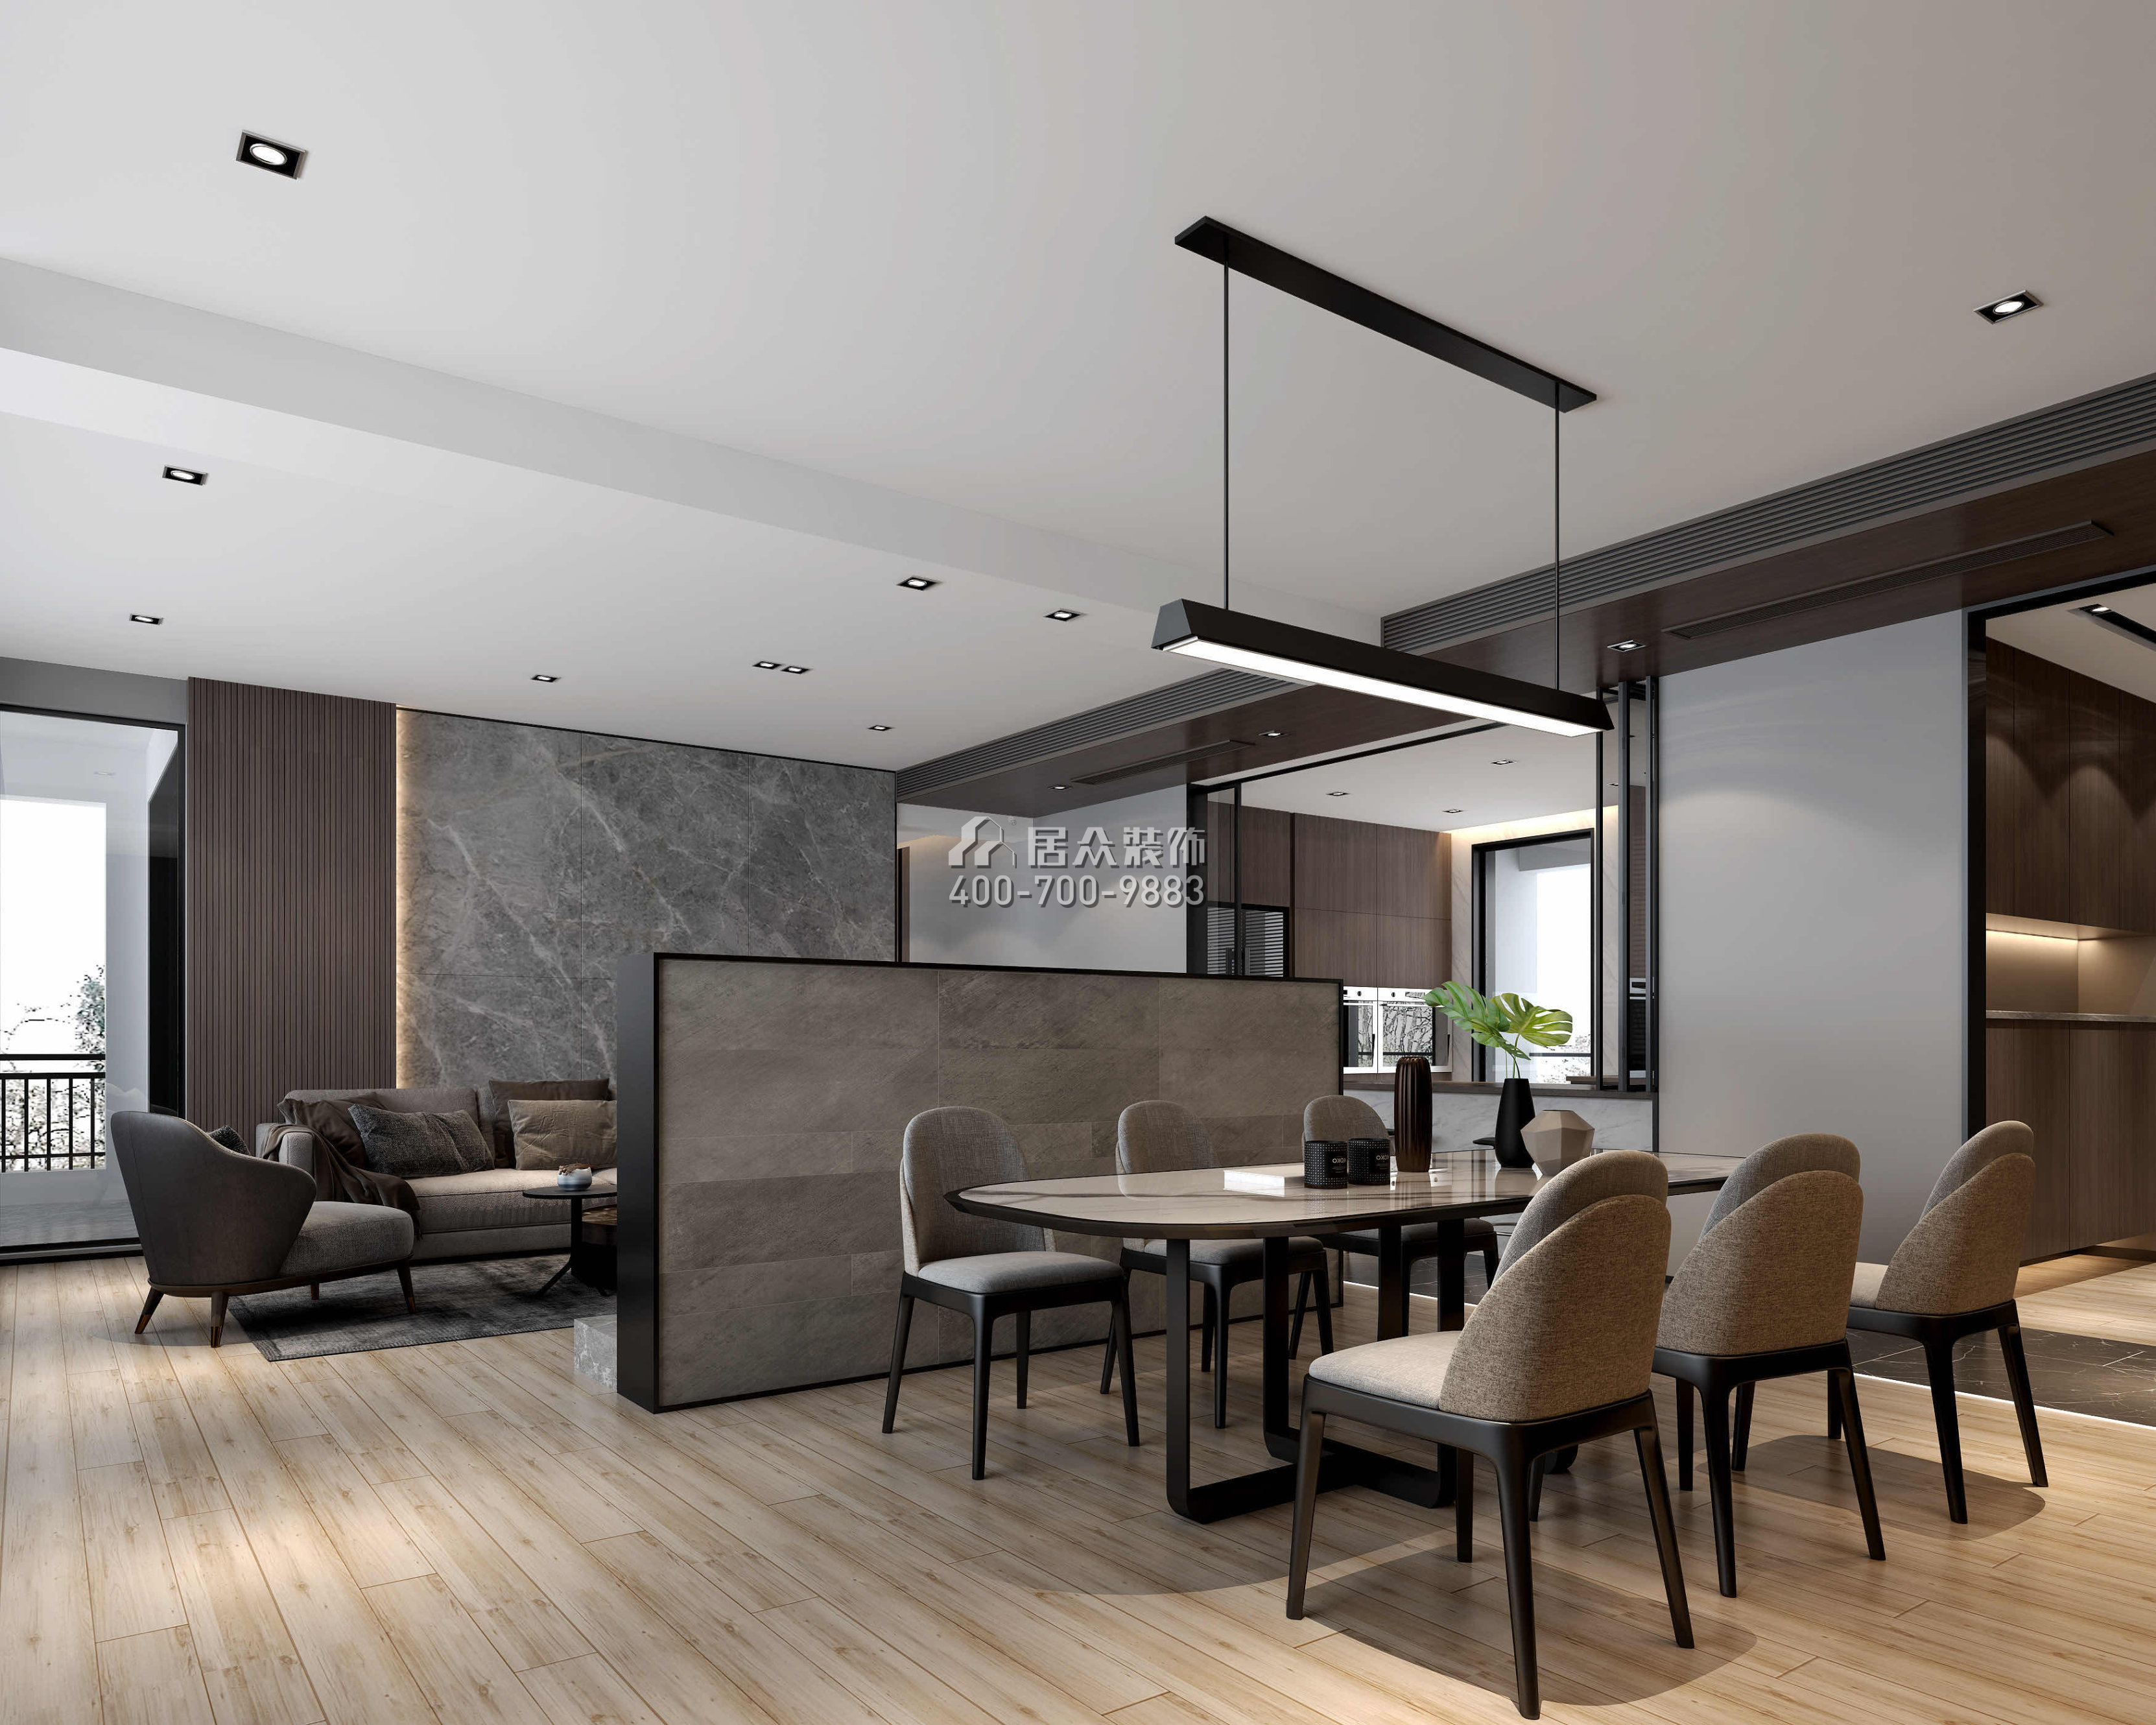 中信御園220平方米現代簡約風格平層戶型客餐廳一體裝修效果圖